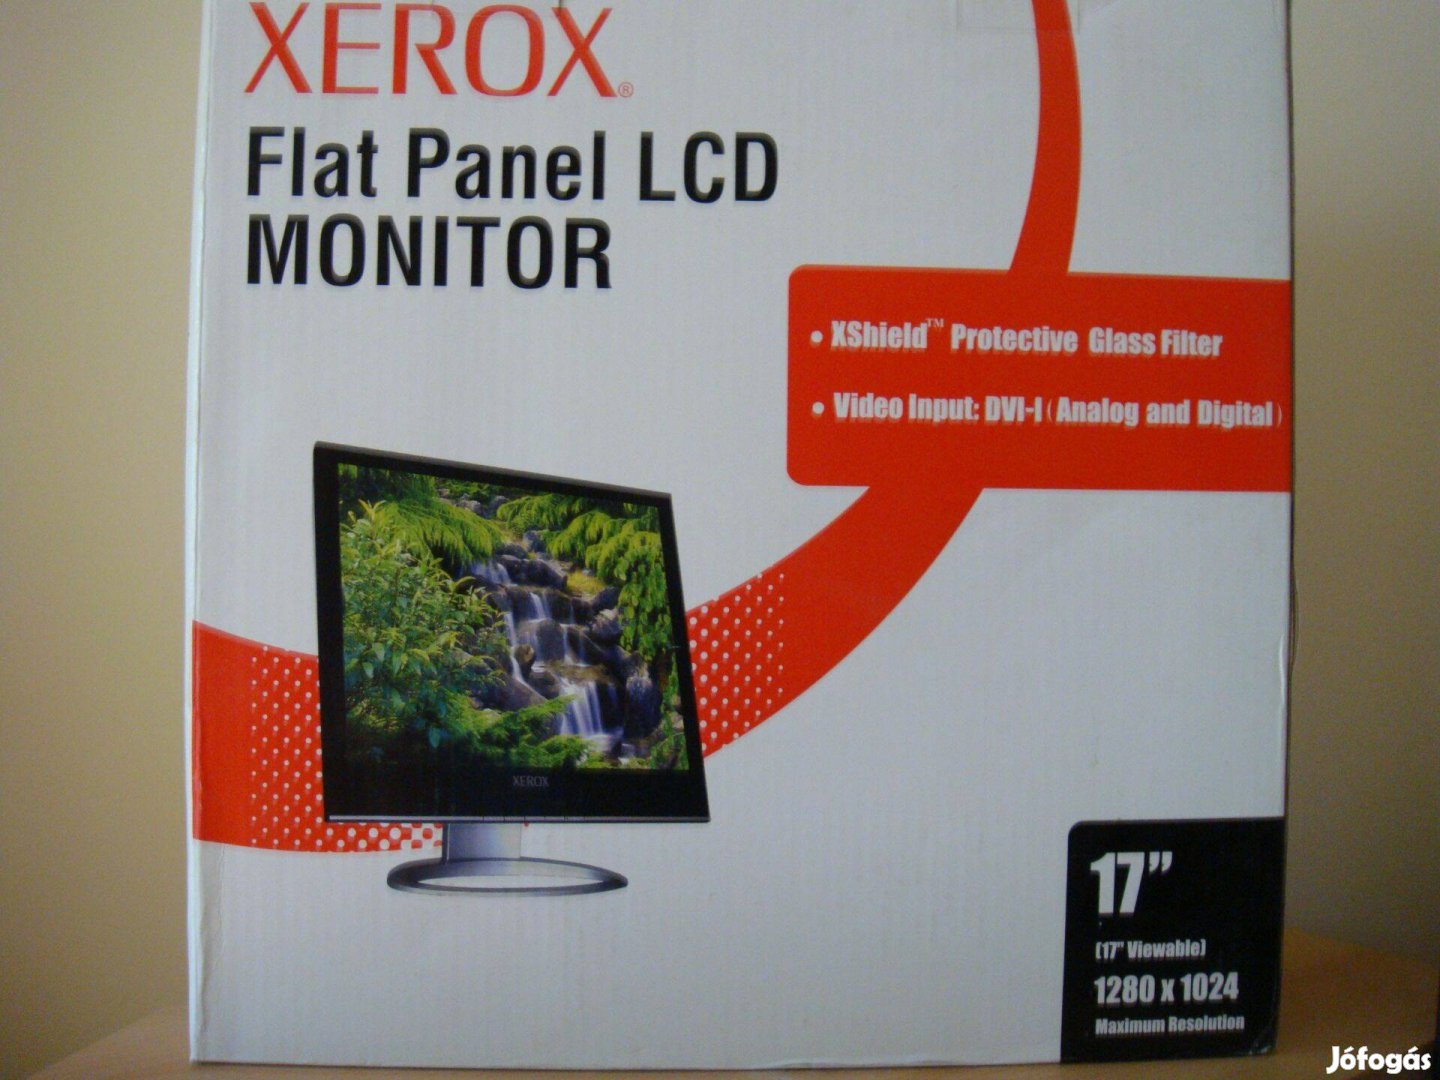 Xerox TFT LCD monotor